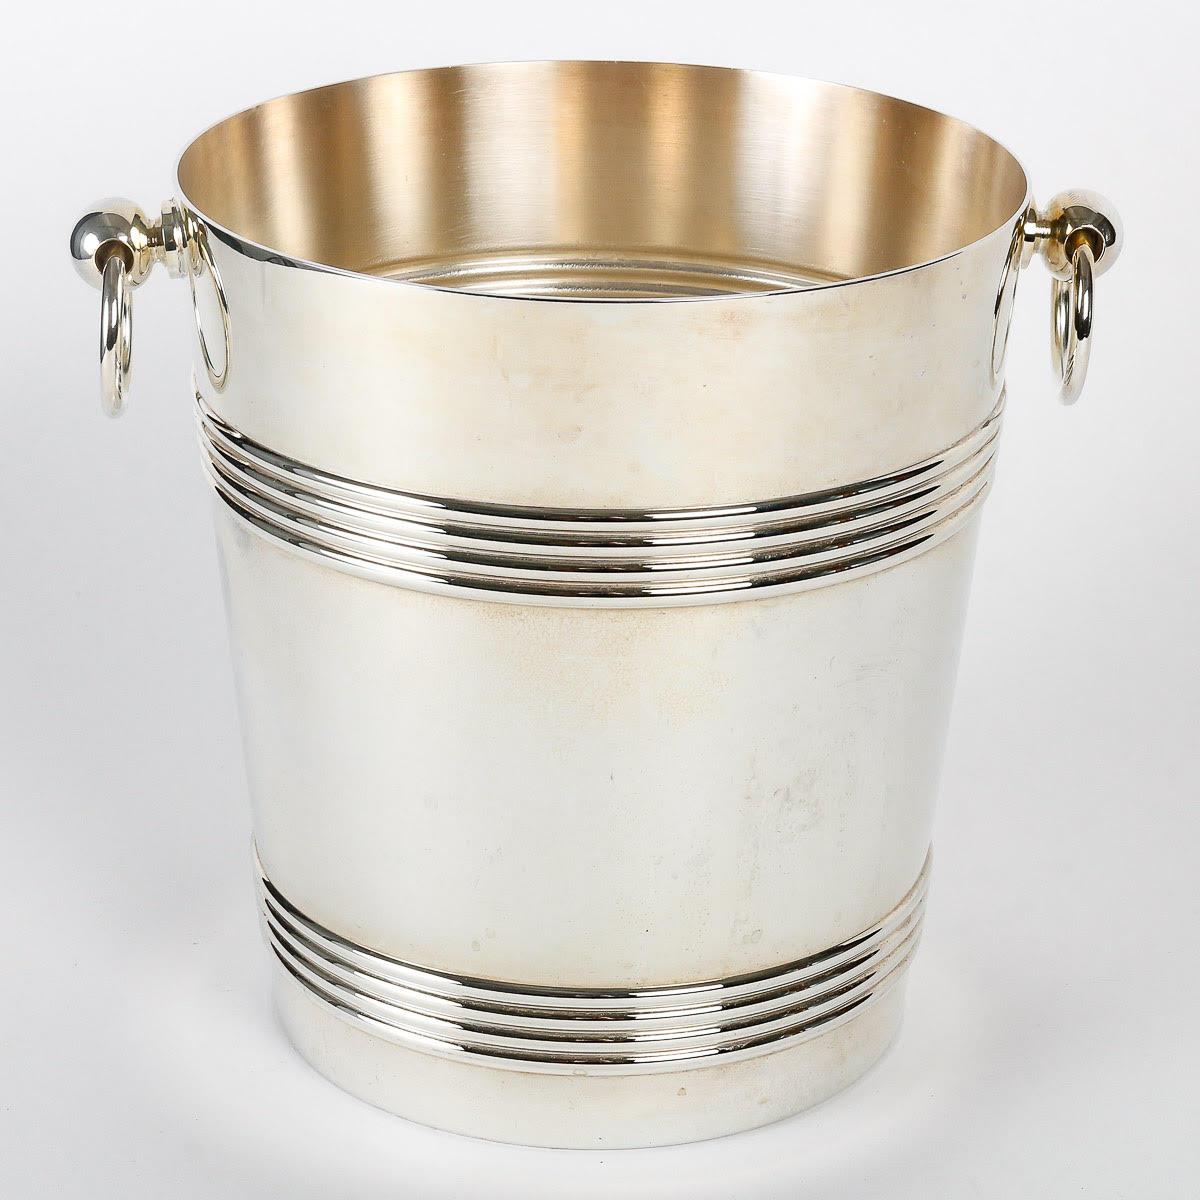 Seau à glace en métal argenté de Christofle.

Seau à glace en métal argenté de la Maison Christofle, 20e siècle, avec son coffret de rangement.  
H : 21cm , L : 24cm, P : 19cm